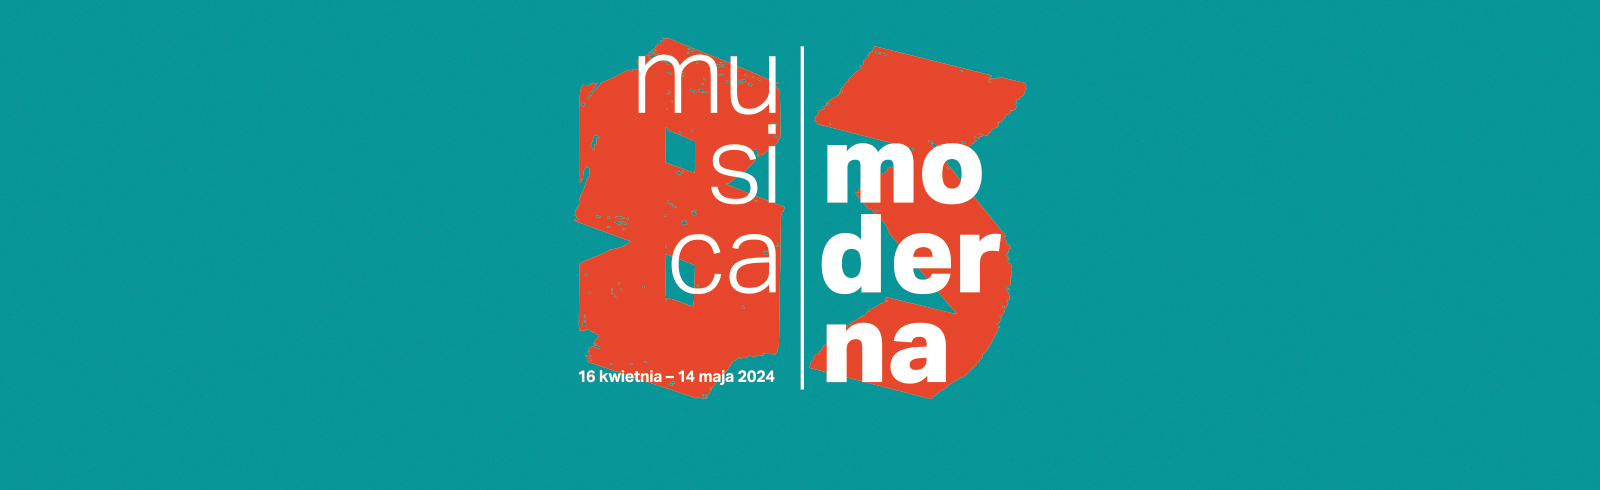 83. festiwal Musica moderna